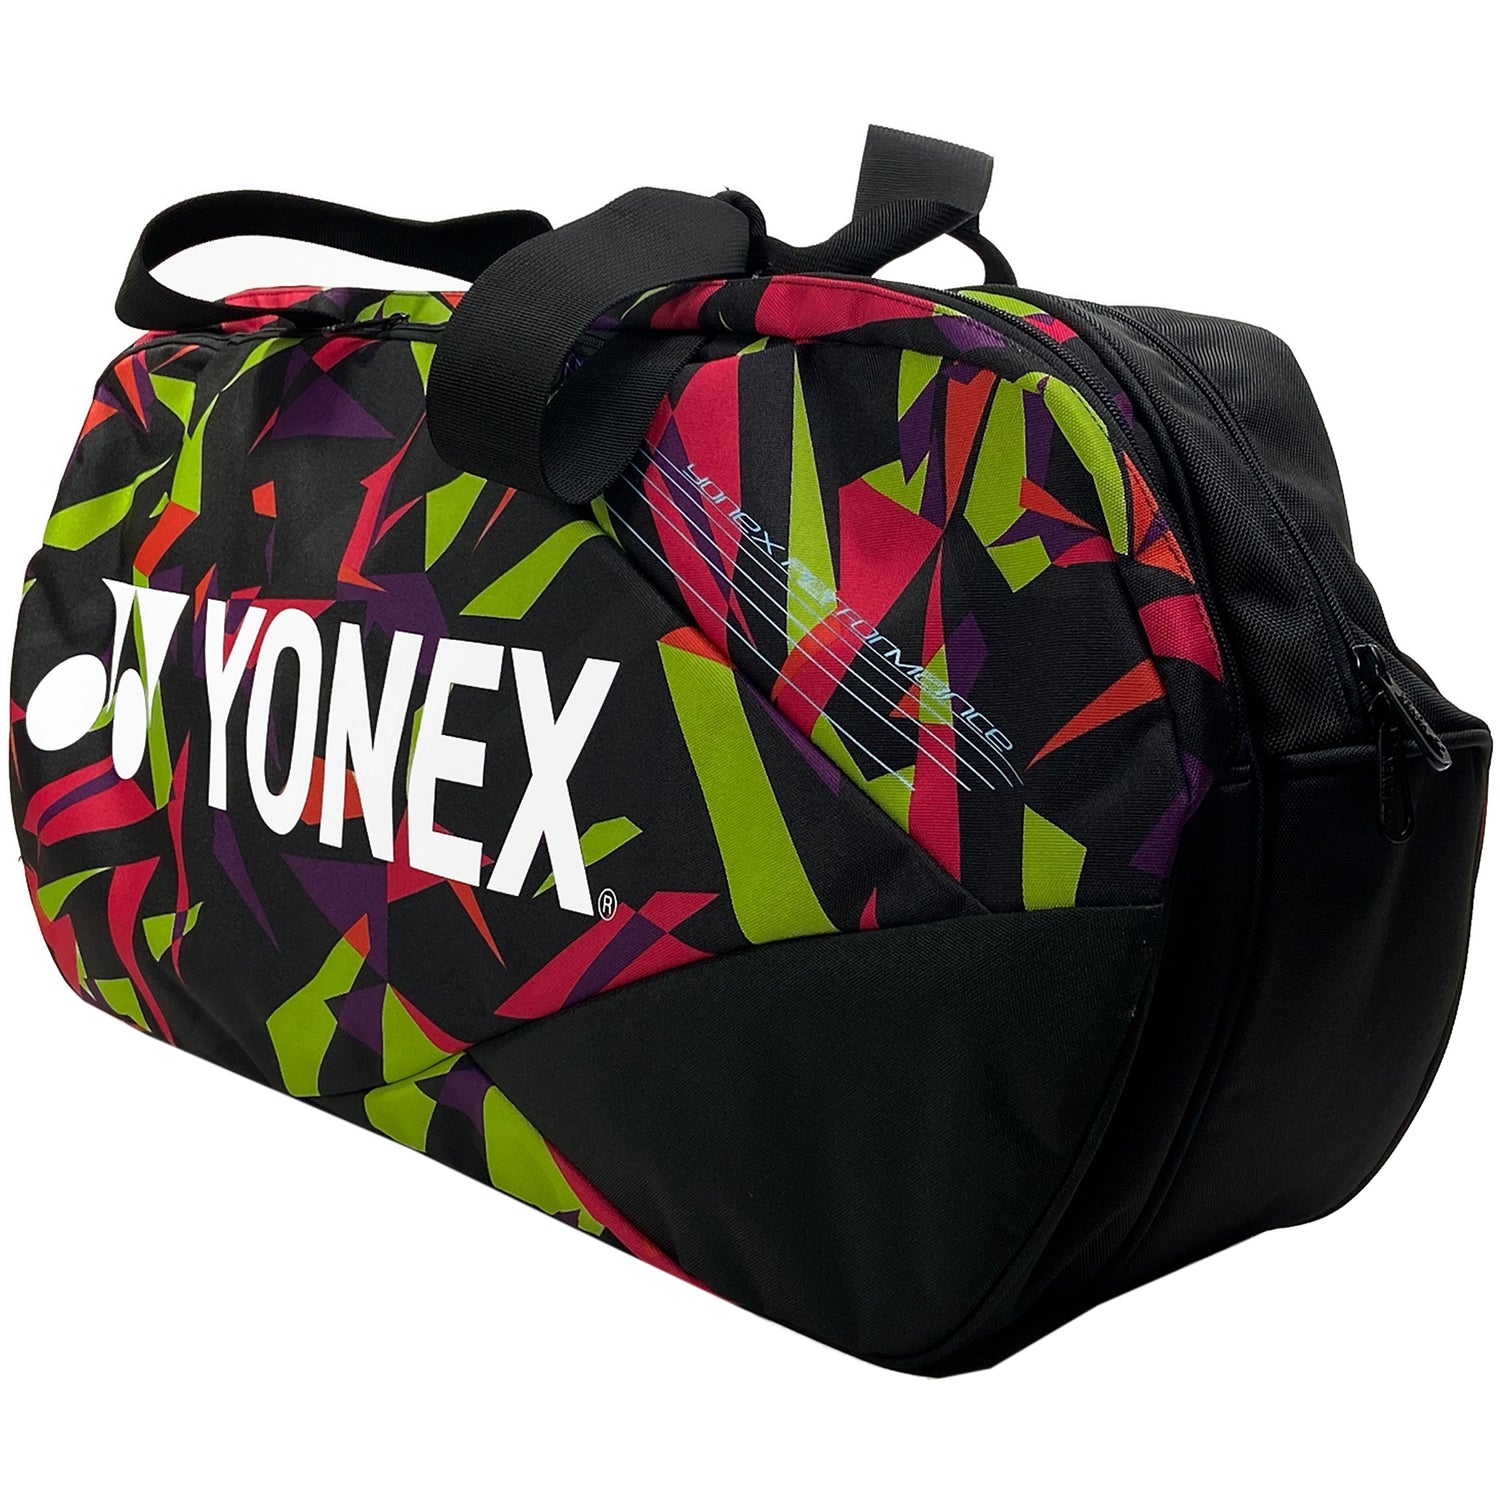 YONEX KIT BAG